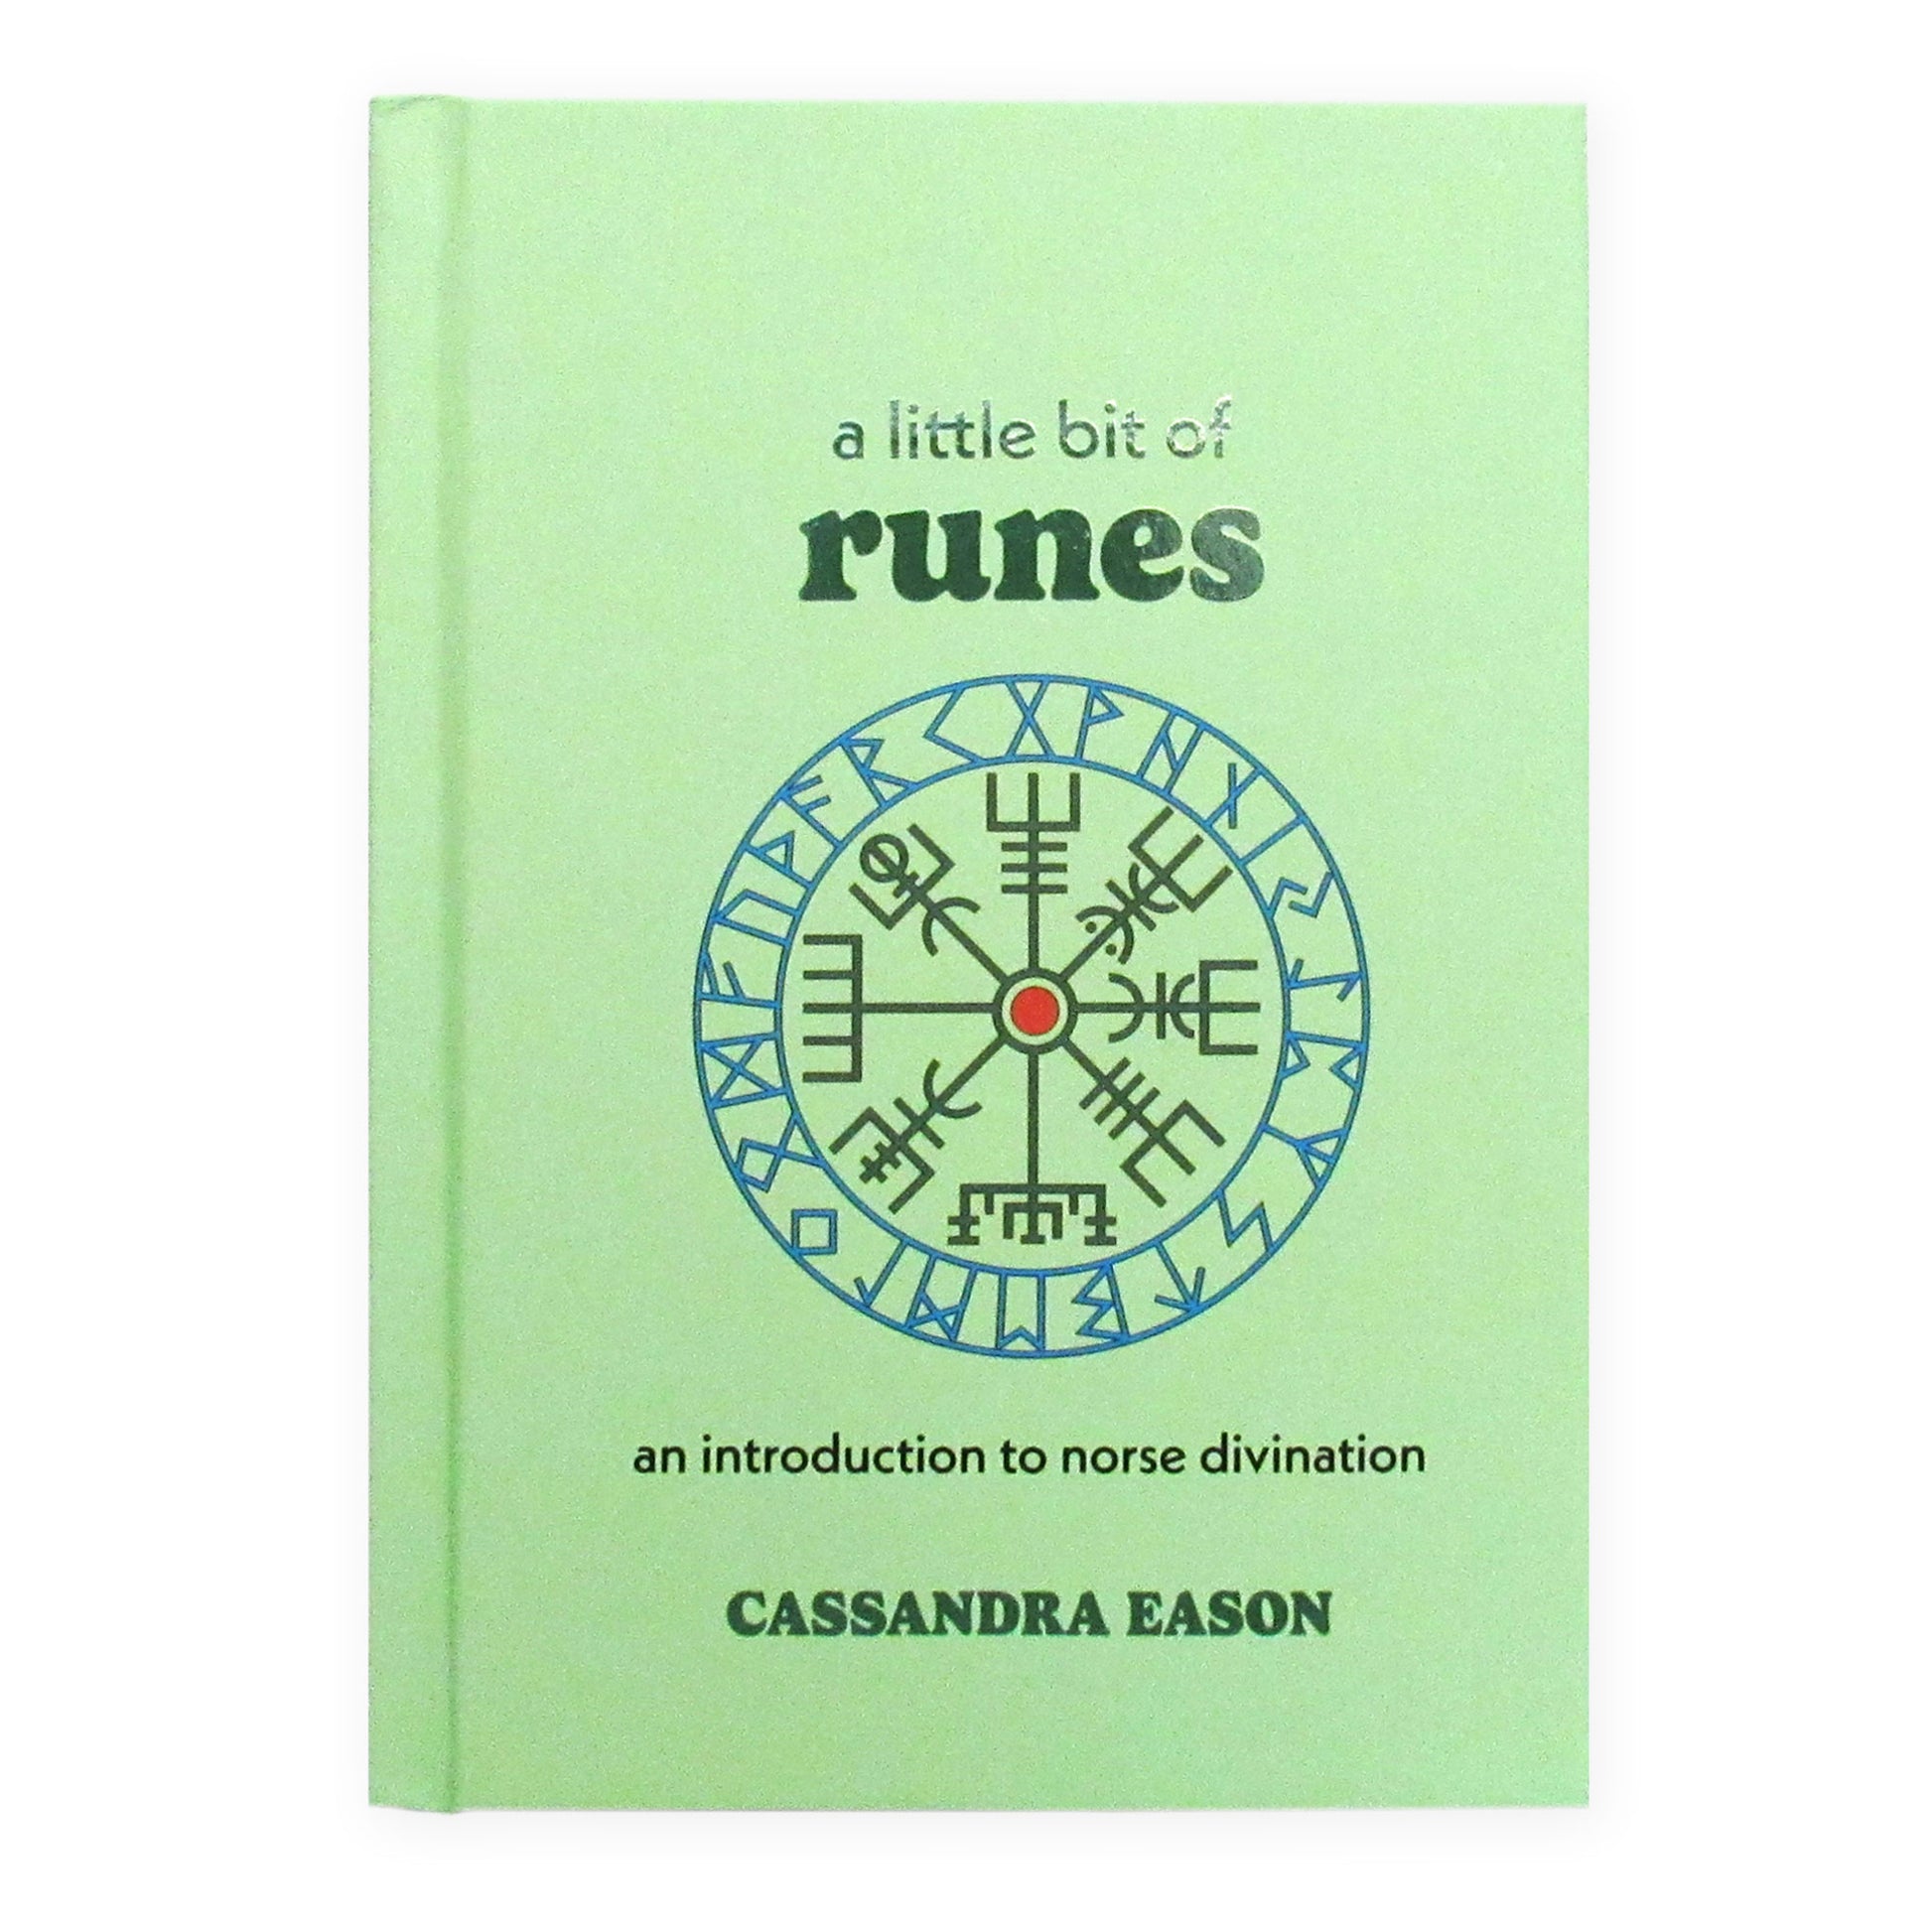 A Little Bit of Runes by Cassandra Eason